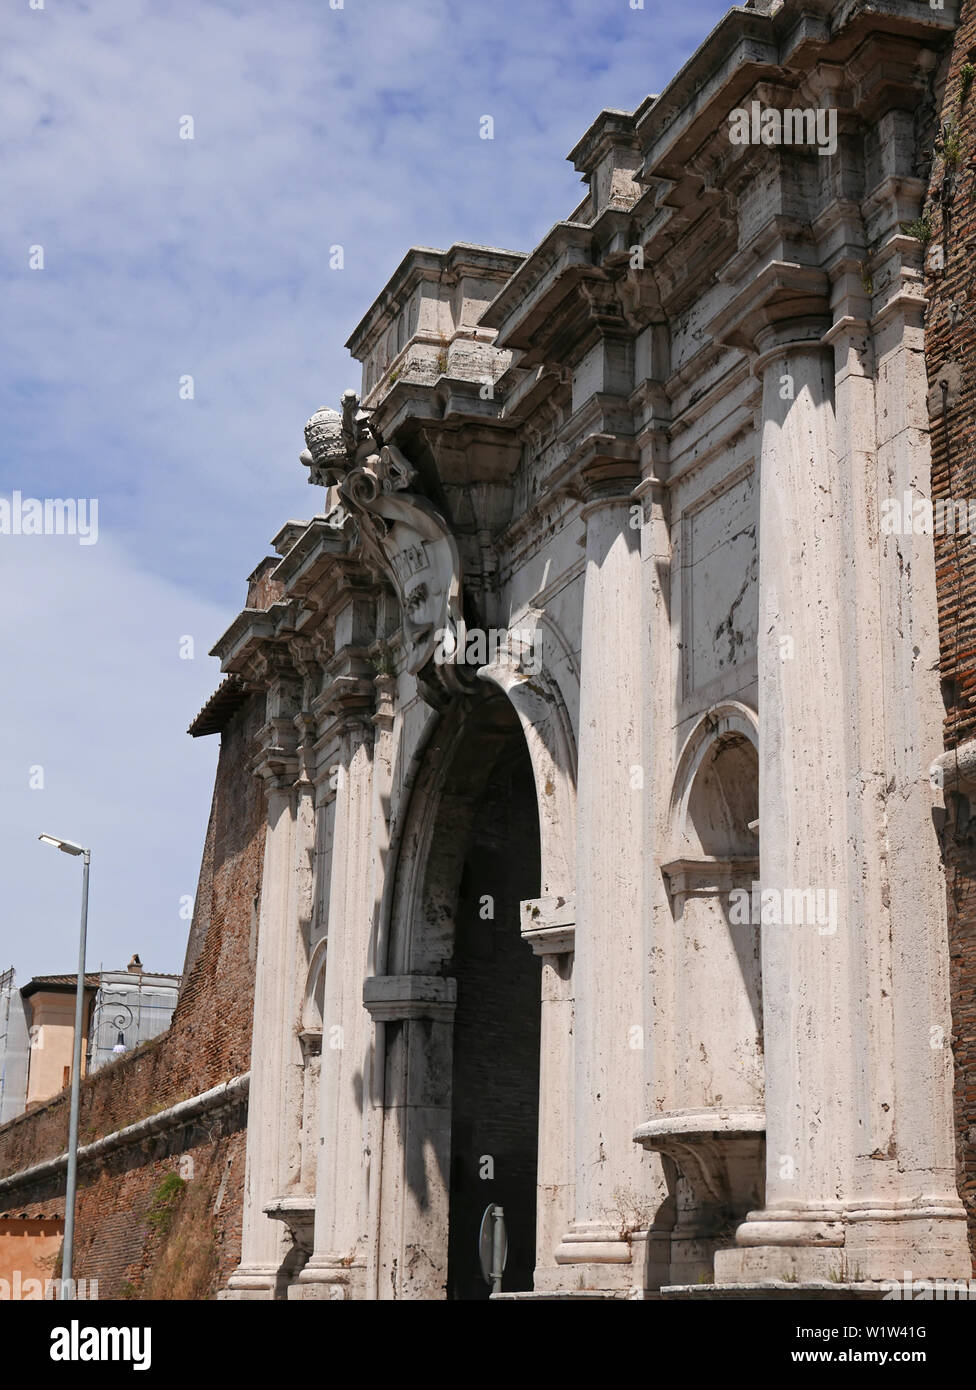 Porta Portese ancient city gate, Rome, Italy Stock Photo